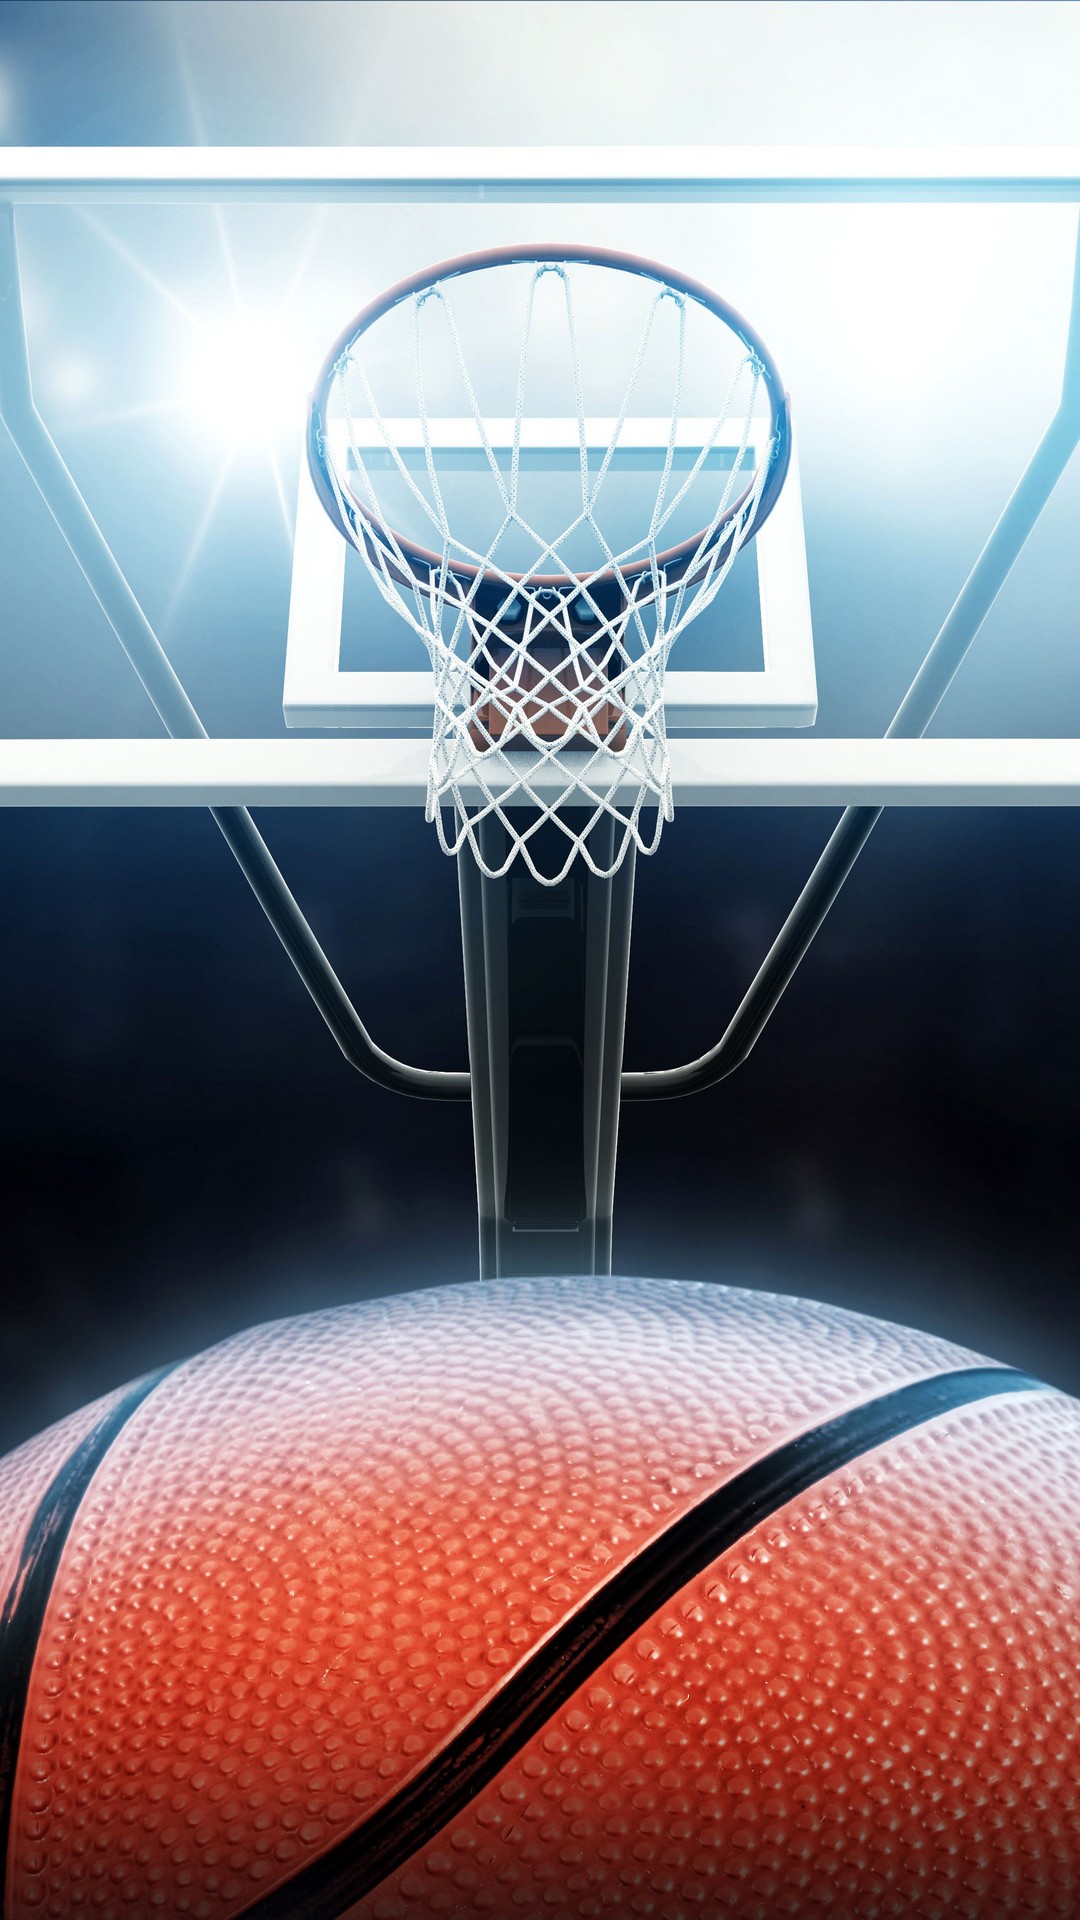 baloncesto fondos de pantalla iphone,aro de baloncesto,baloncesto,red,cancha de baloncesto,equipo deportivo